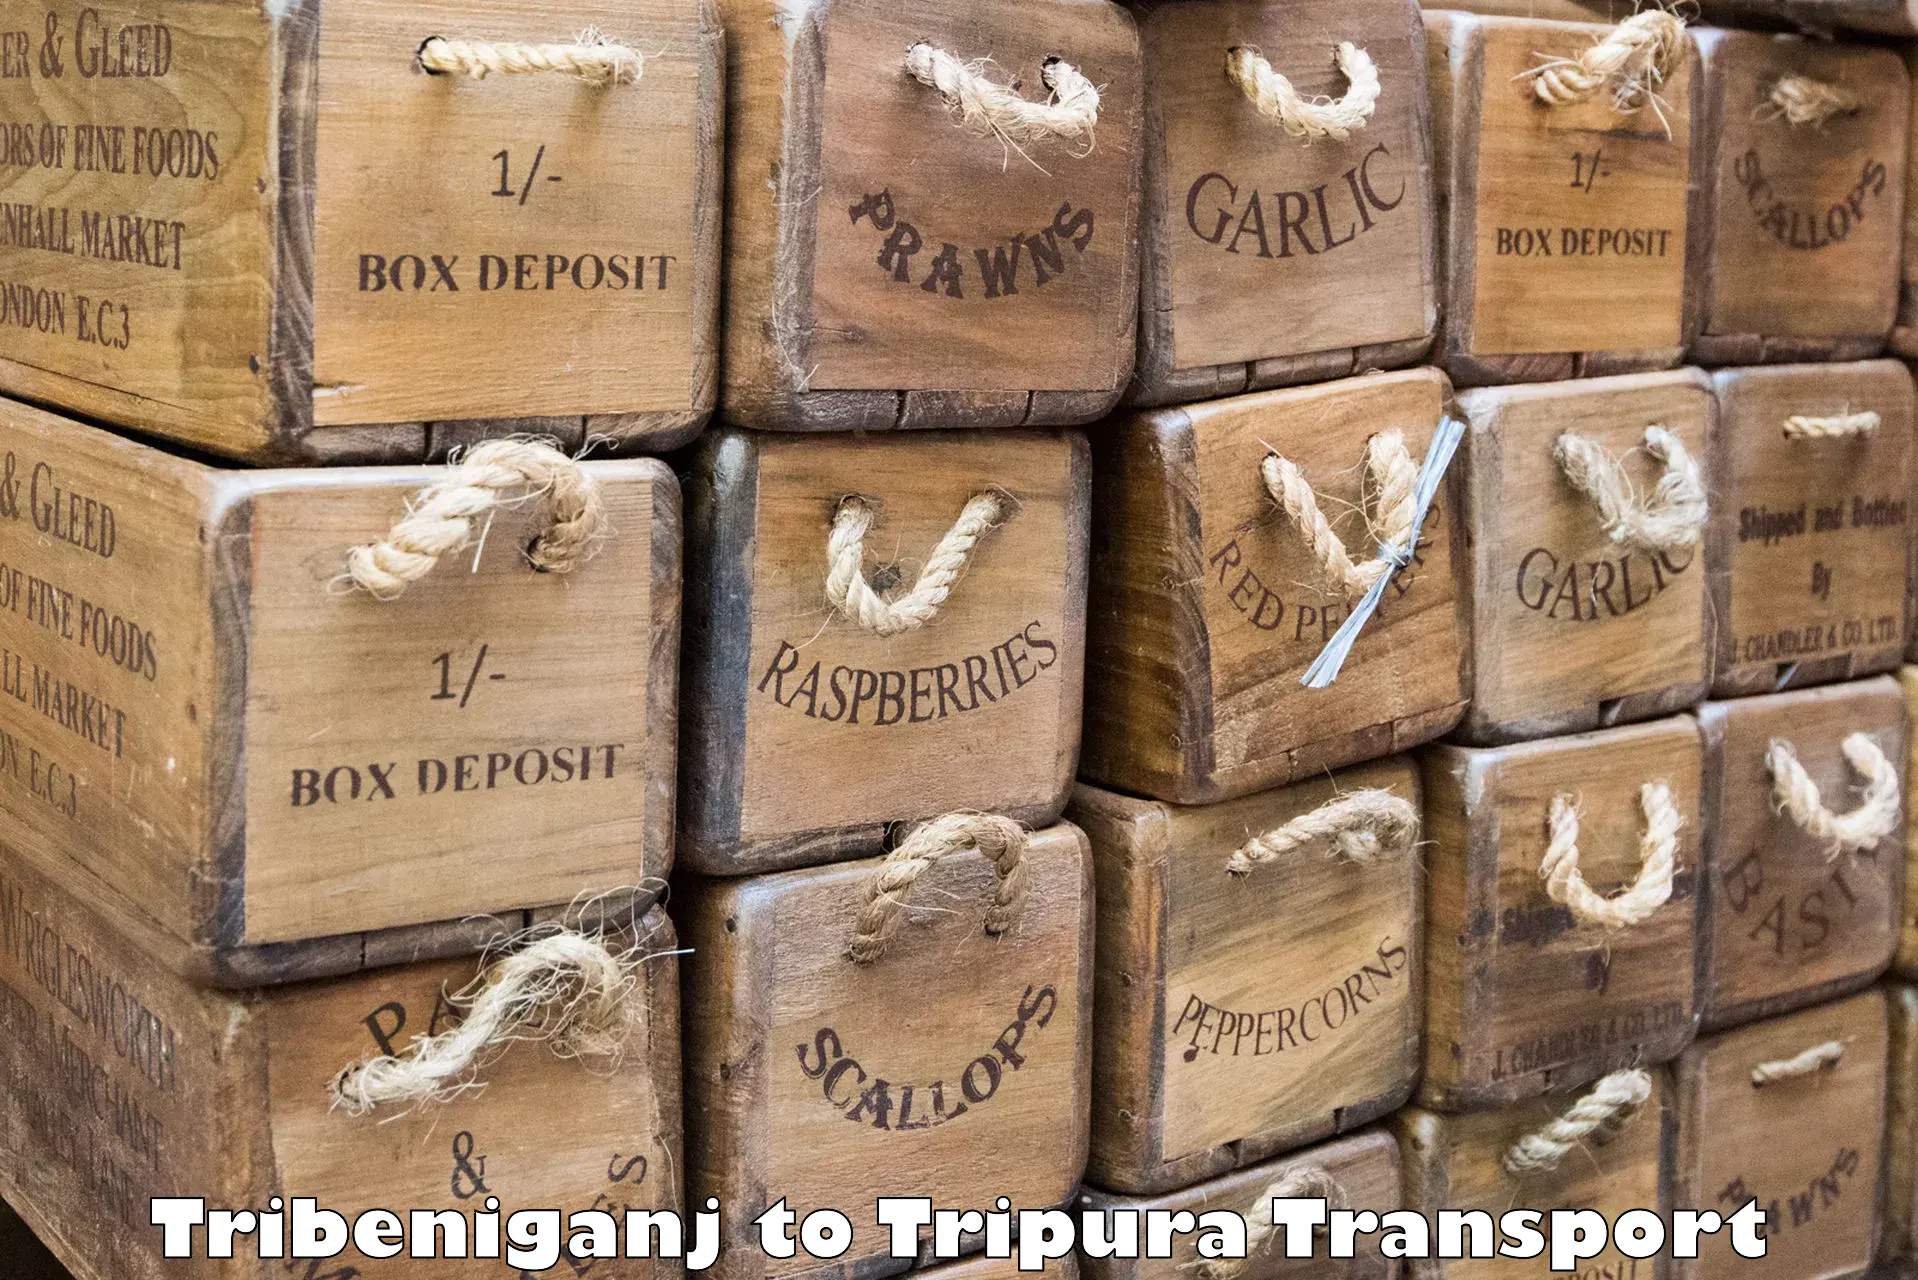 Air cargo transport services Tribeniganj to Teliamura